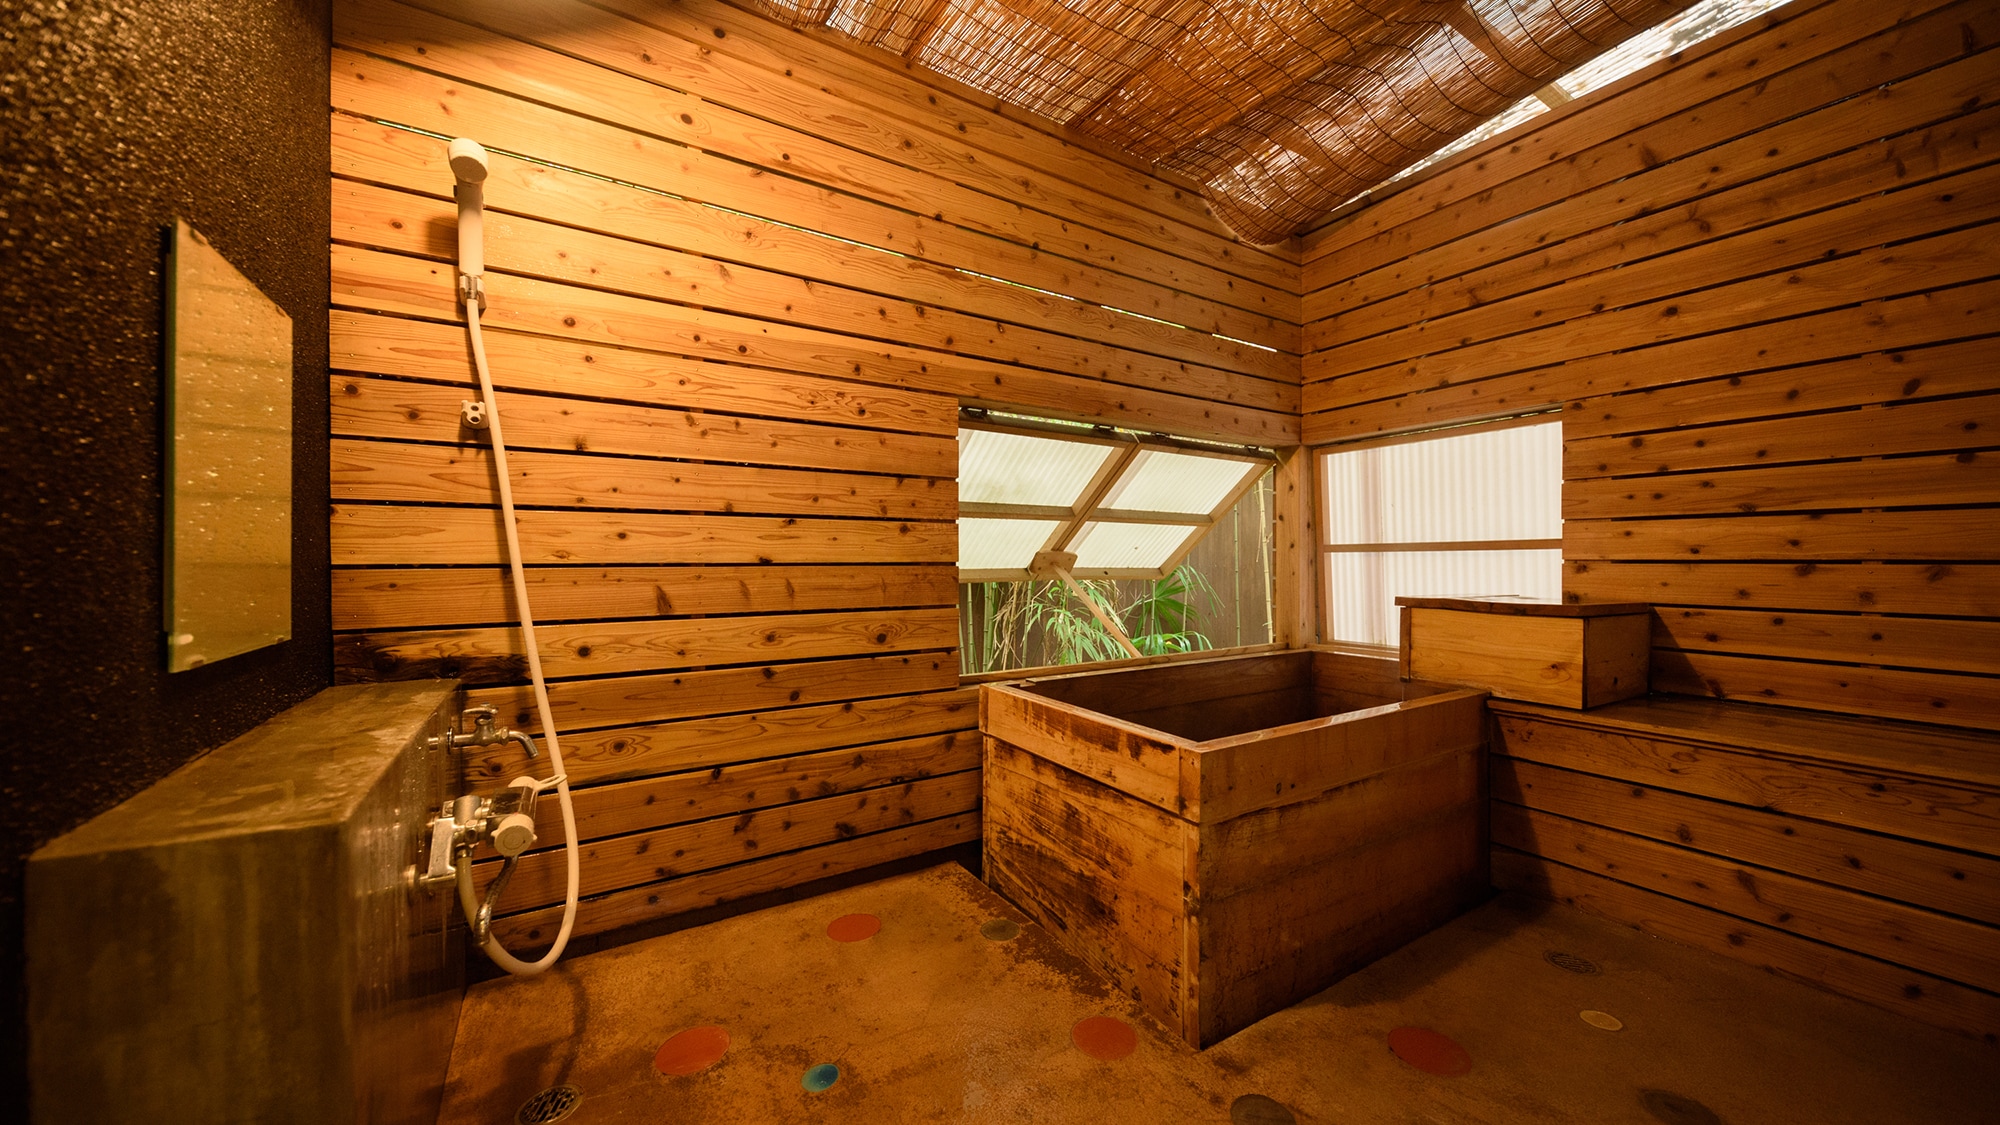 帶溫室浴池的日式房間 6 張榻榻米 + 浴室 / 廁所 [櫻花]